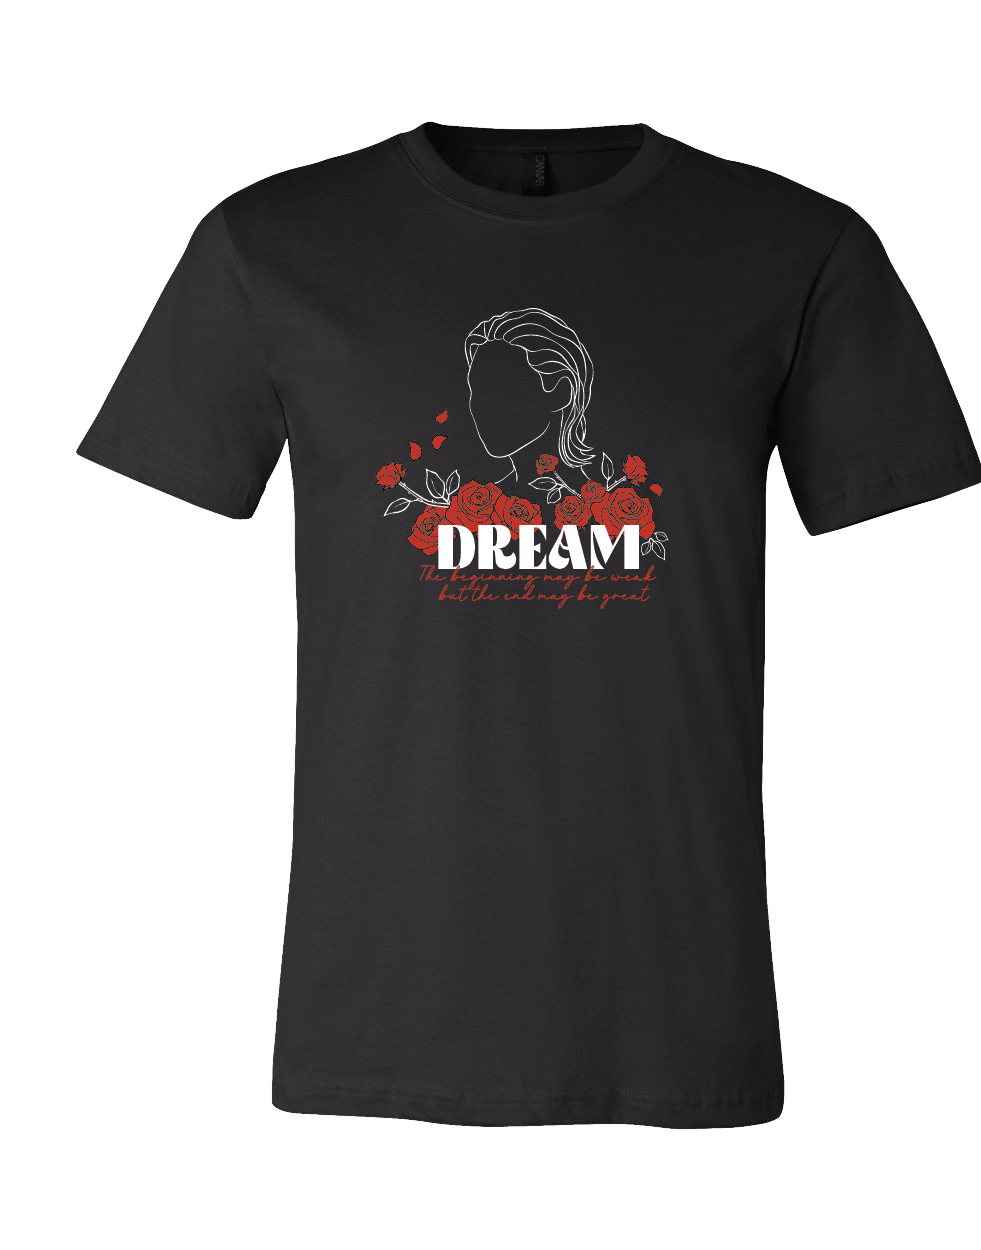 Tshirt - Dream